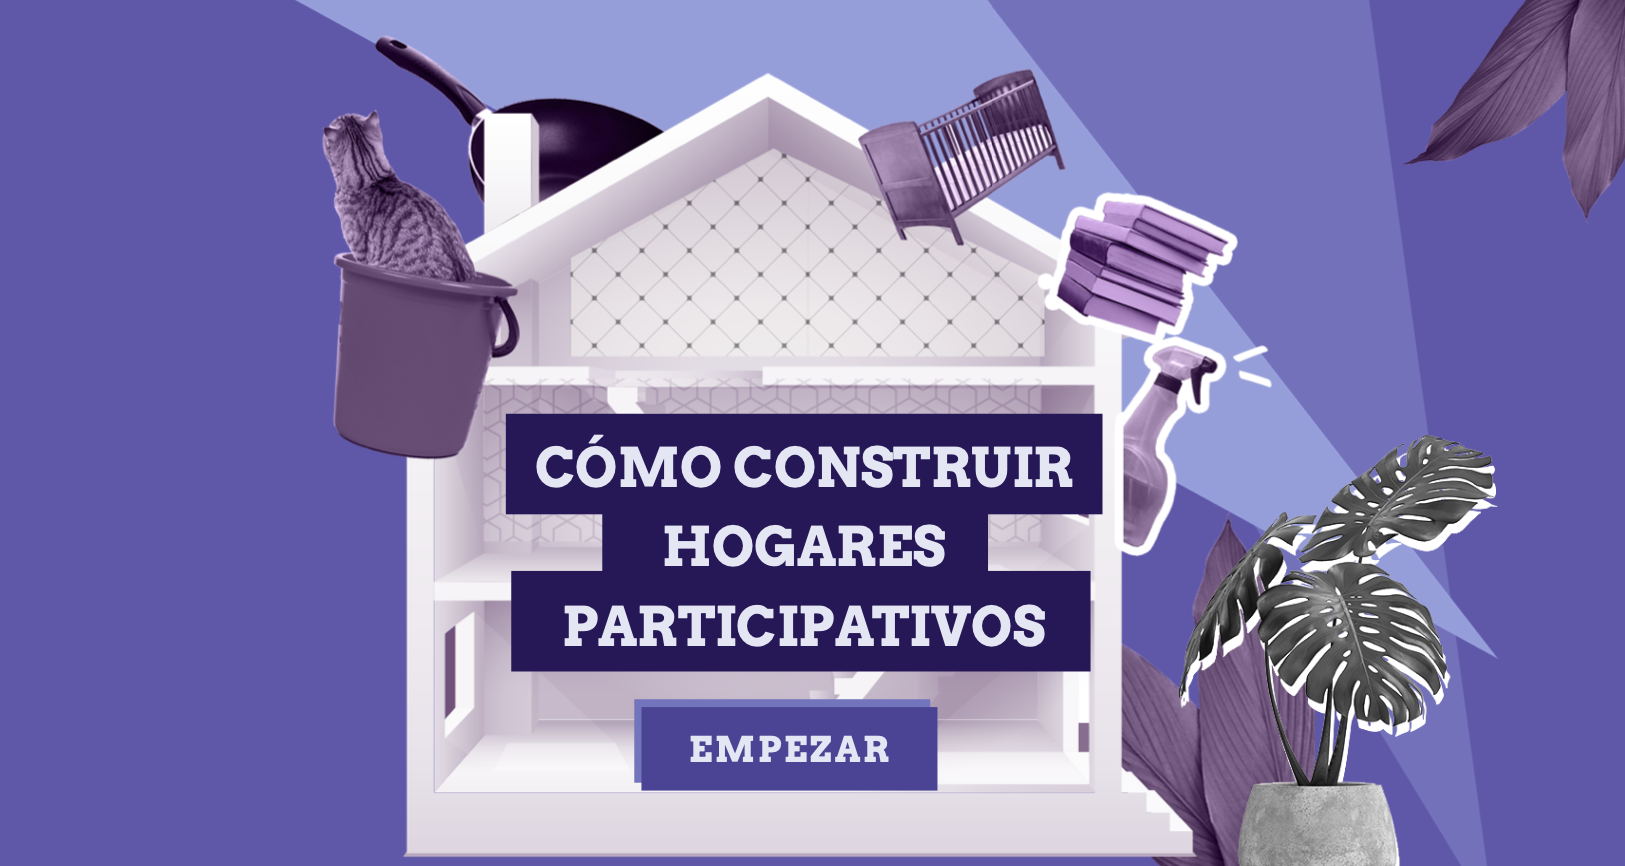 Guía "Cómo construir hogares participativos"